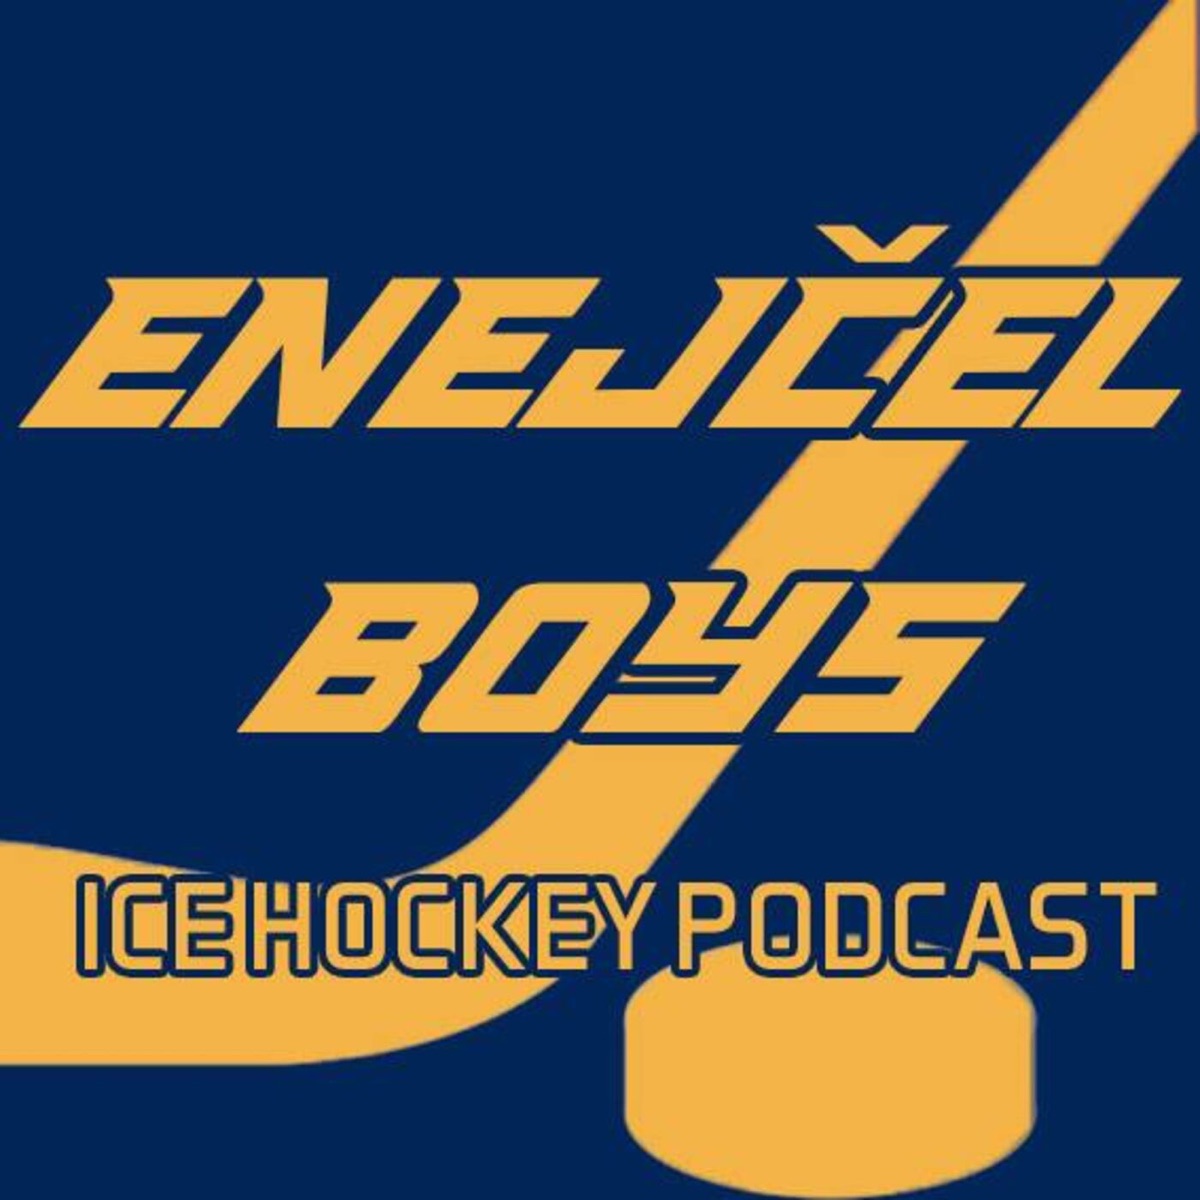 Enejčel Boys – Podcast – Podtail